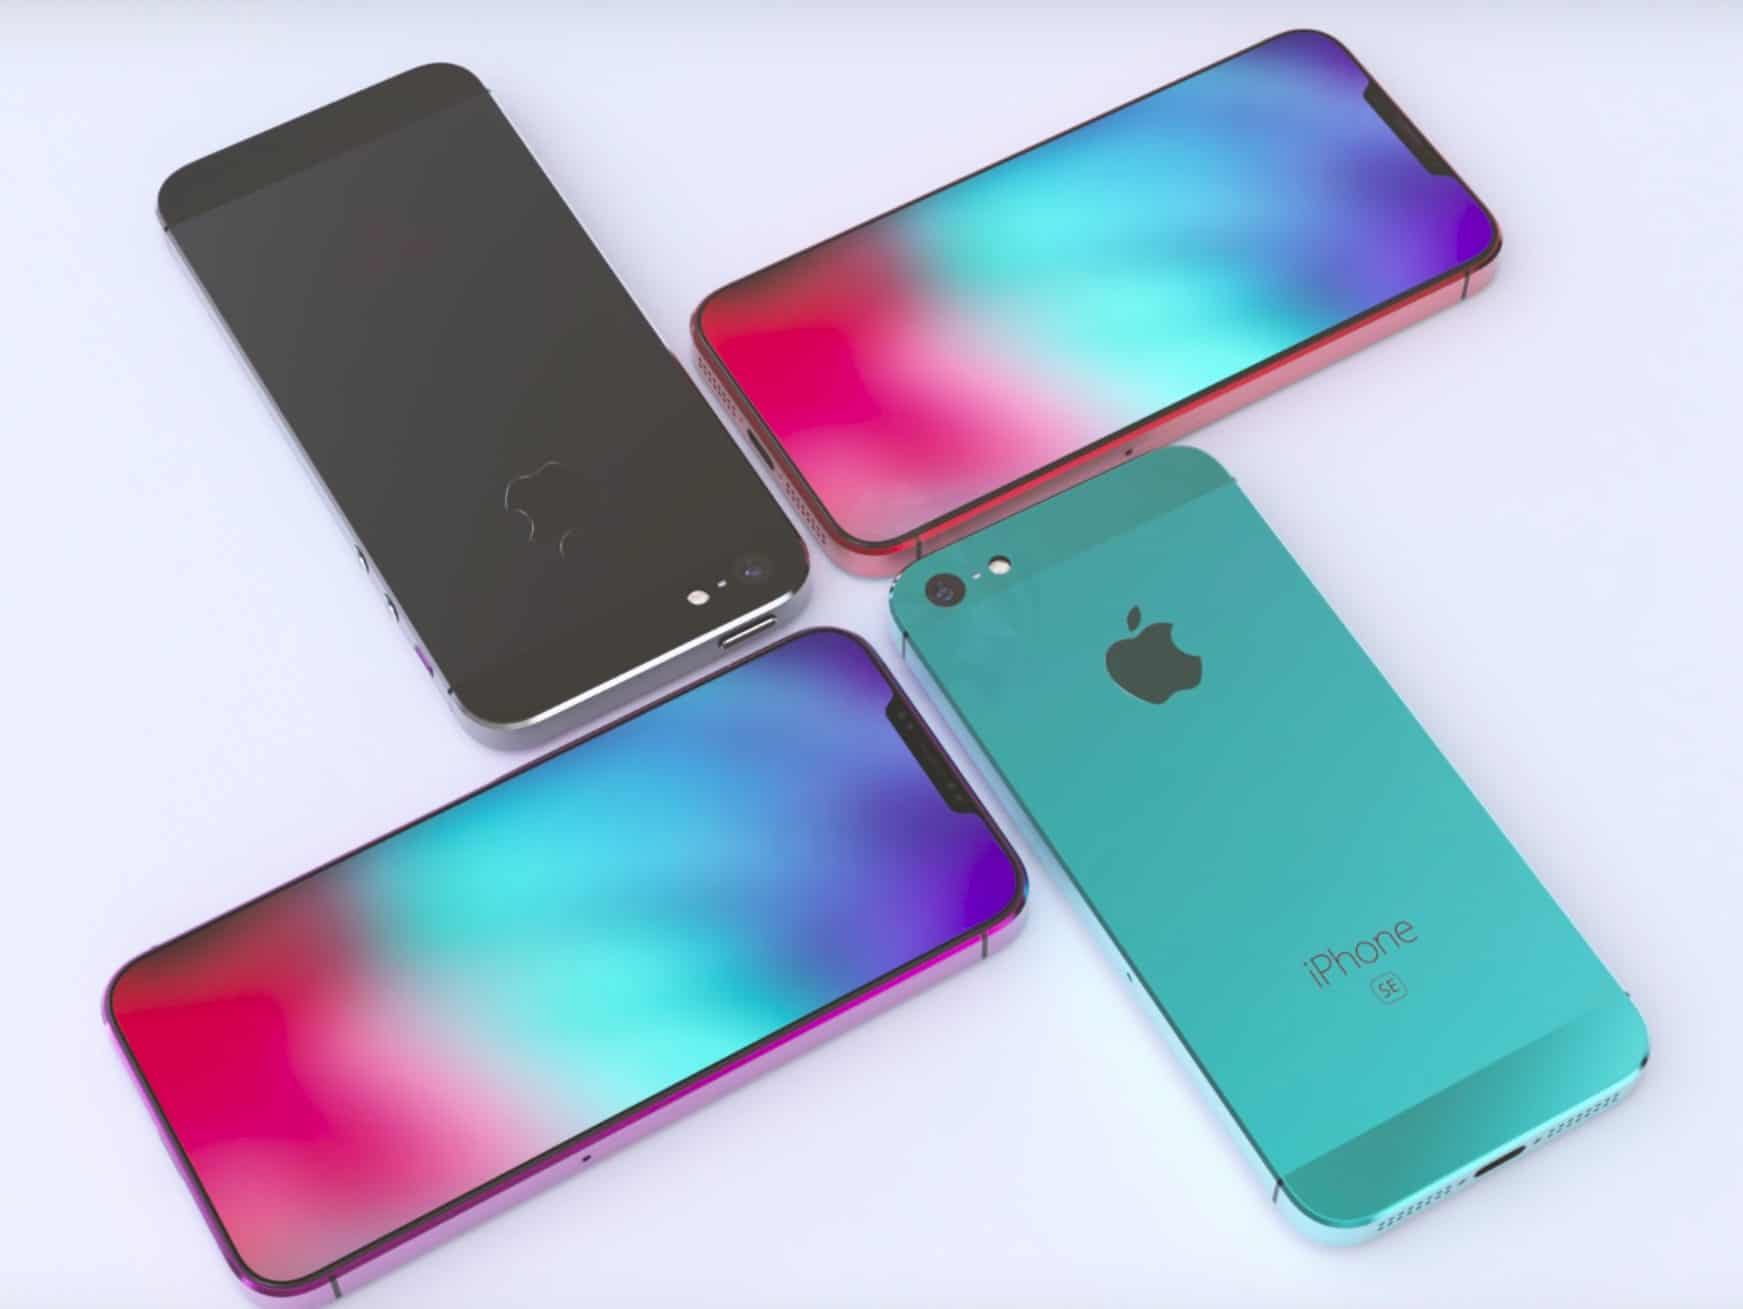 AppleIPhone Anggaran Baru Diharapkan Meluncurkan Awal 2020